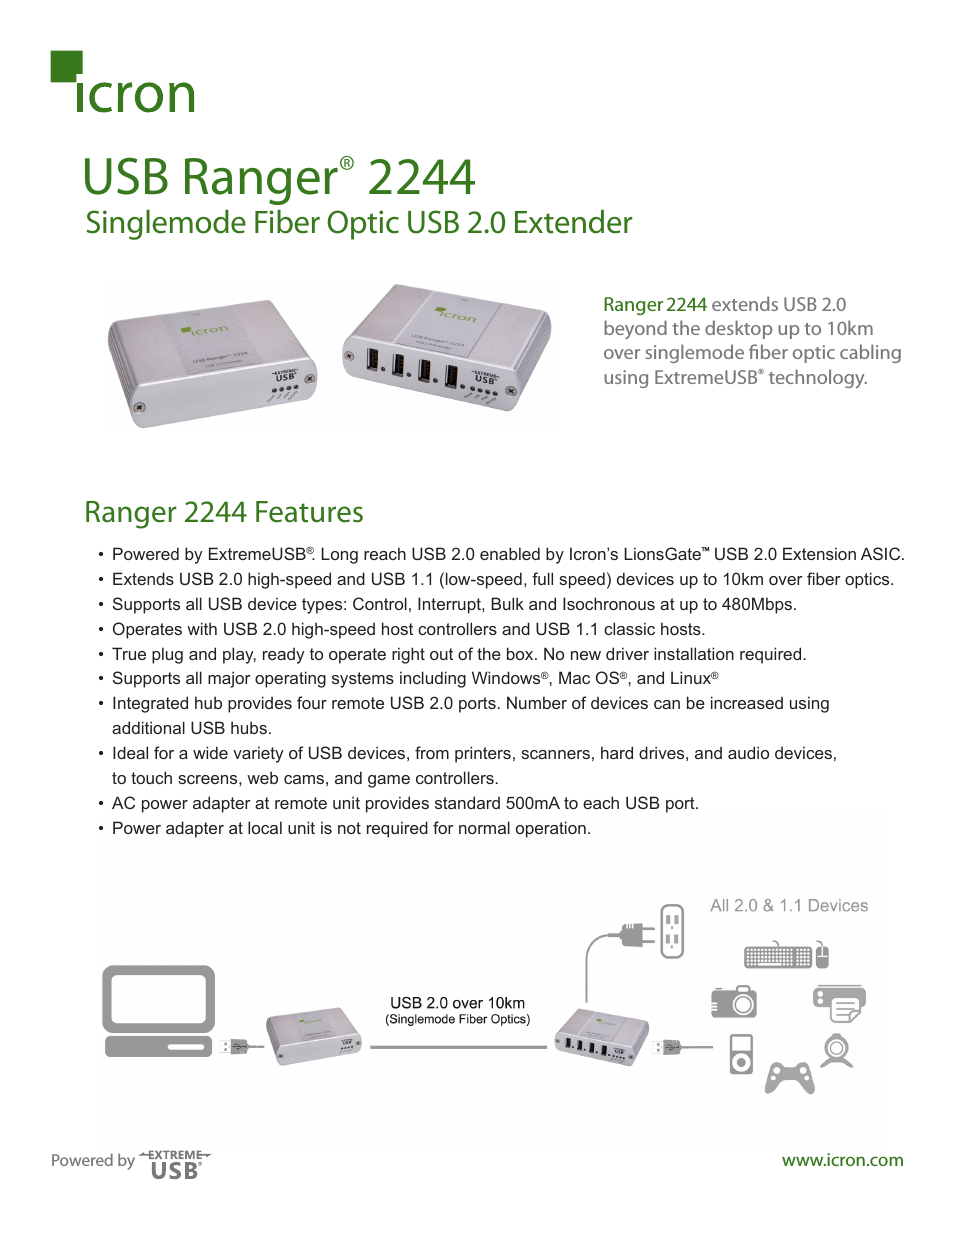 Ranger 2244